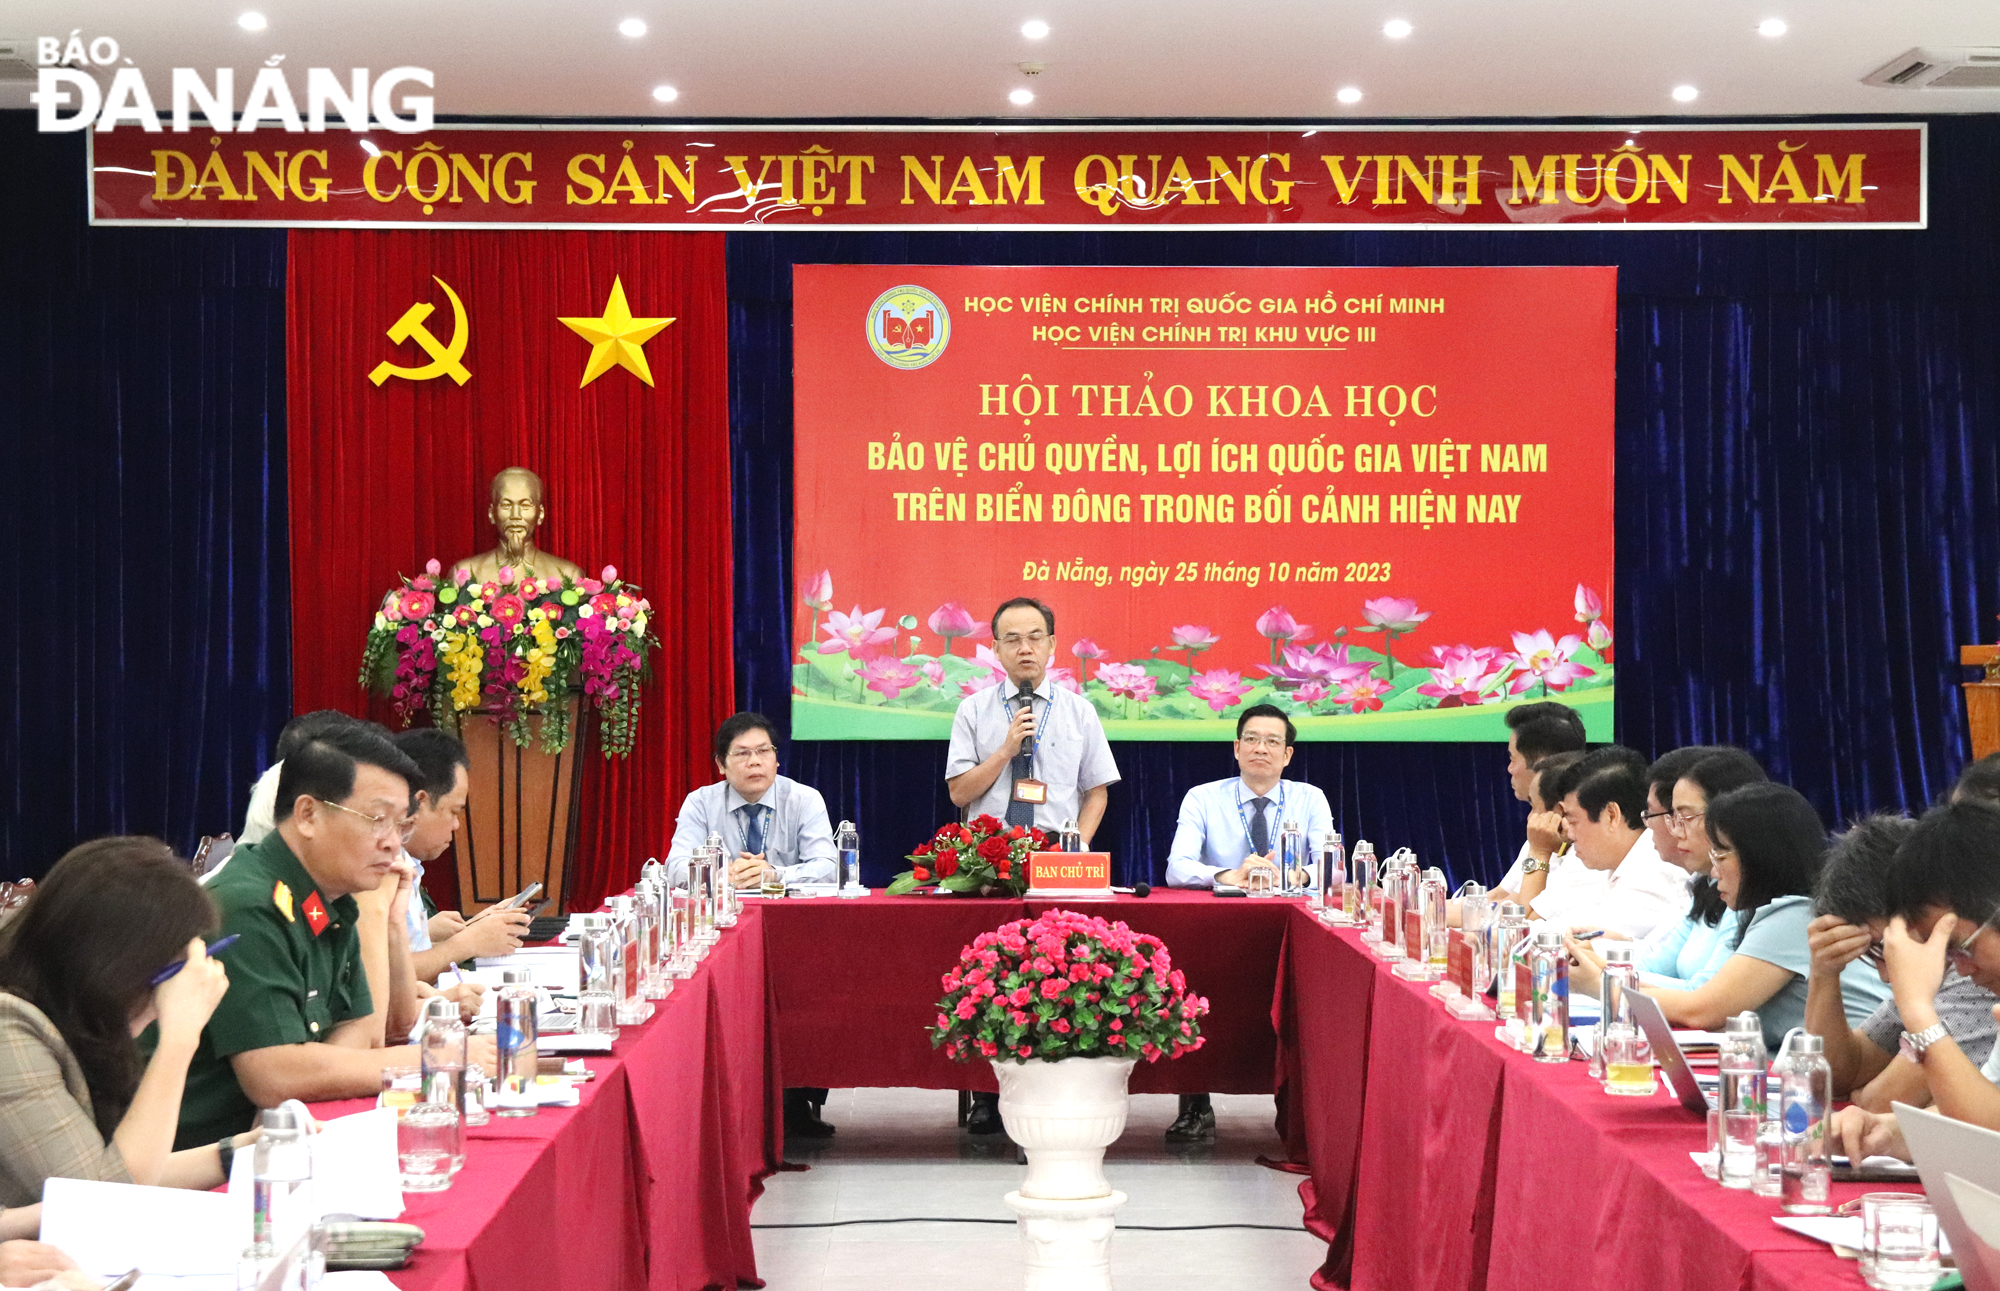 Hội thảo 'Bảo vệ chủ quyền, lợi ích quốc gia Việt Nam trên Biển Đông trong bối cảnh hiện nay'